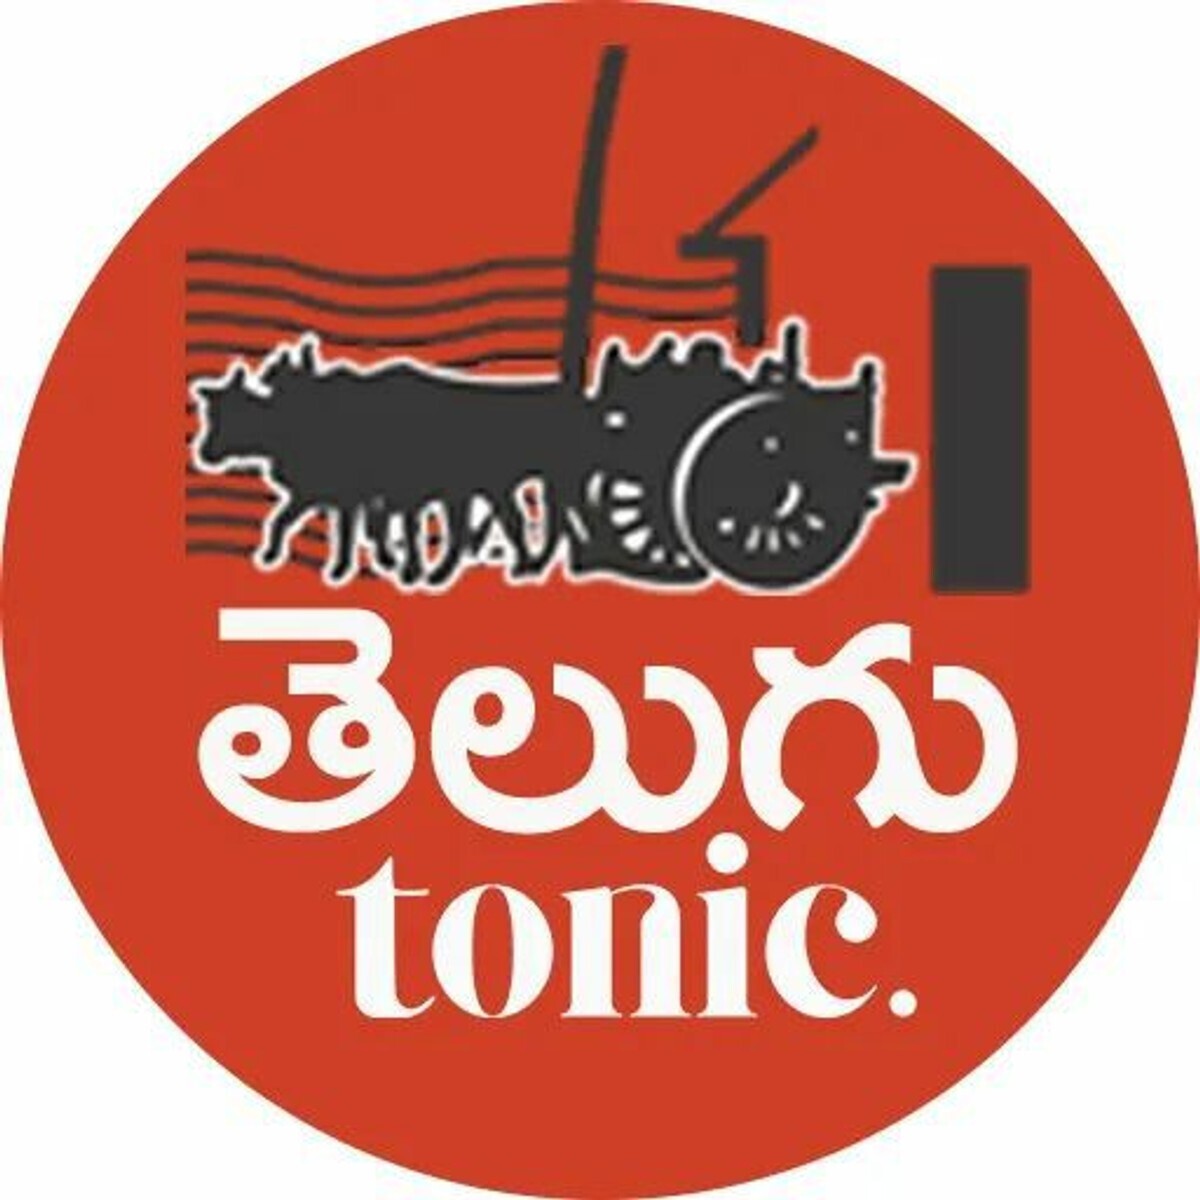 Telugu Tonic photo